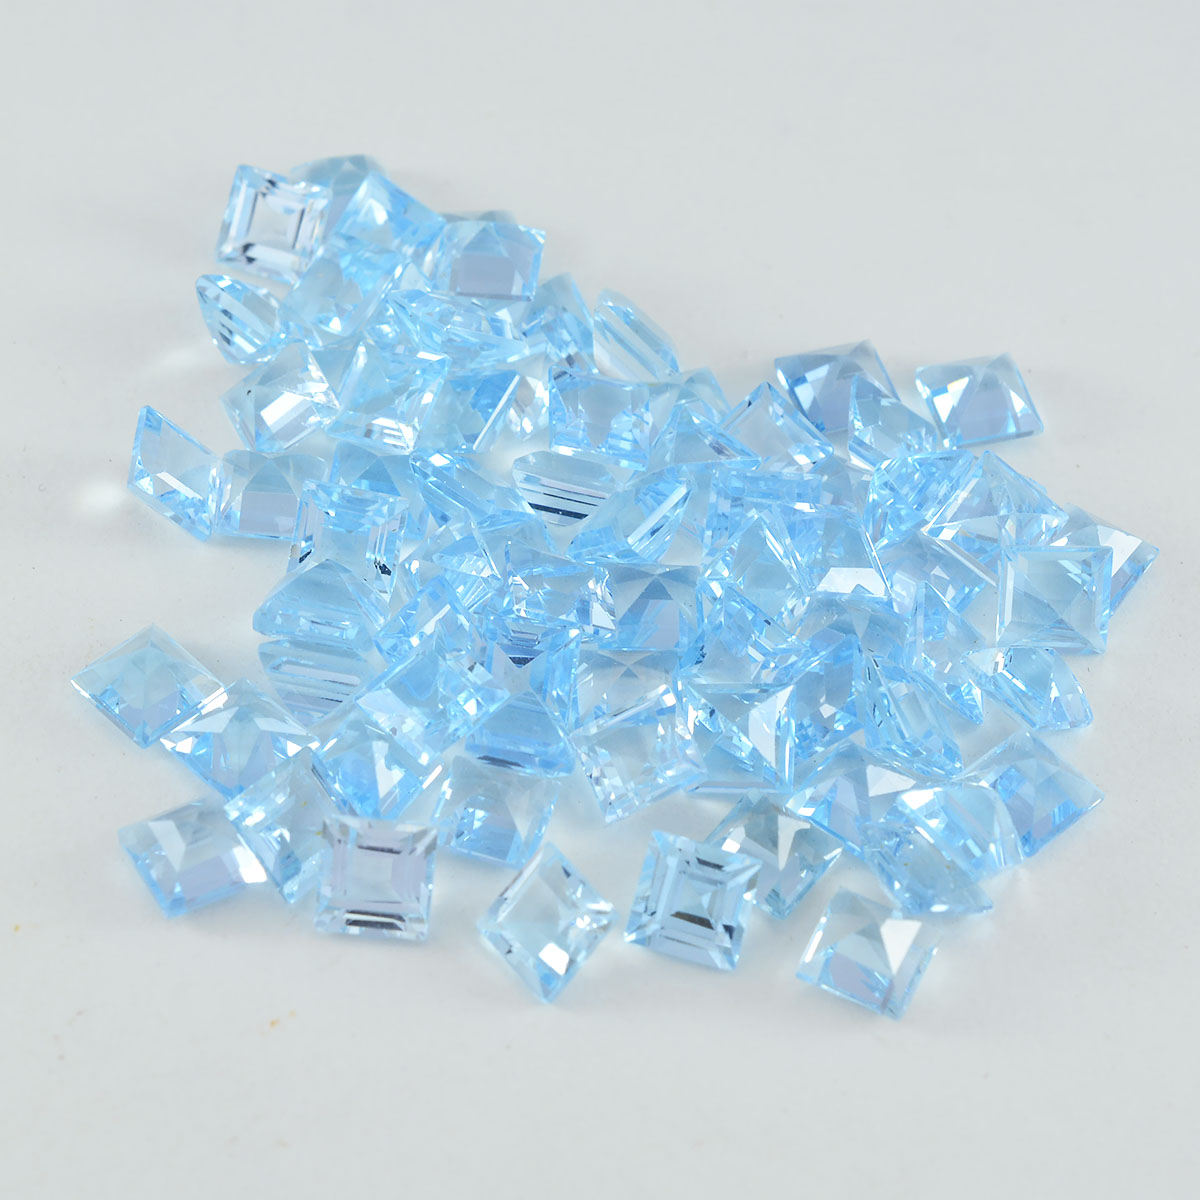 riyogems 1шт натуральный голубой топаз ограненный 5x5 мм квадратной формы драгоценные камни хорошего качества